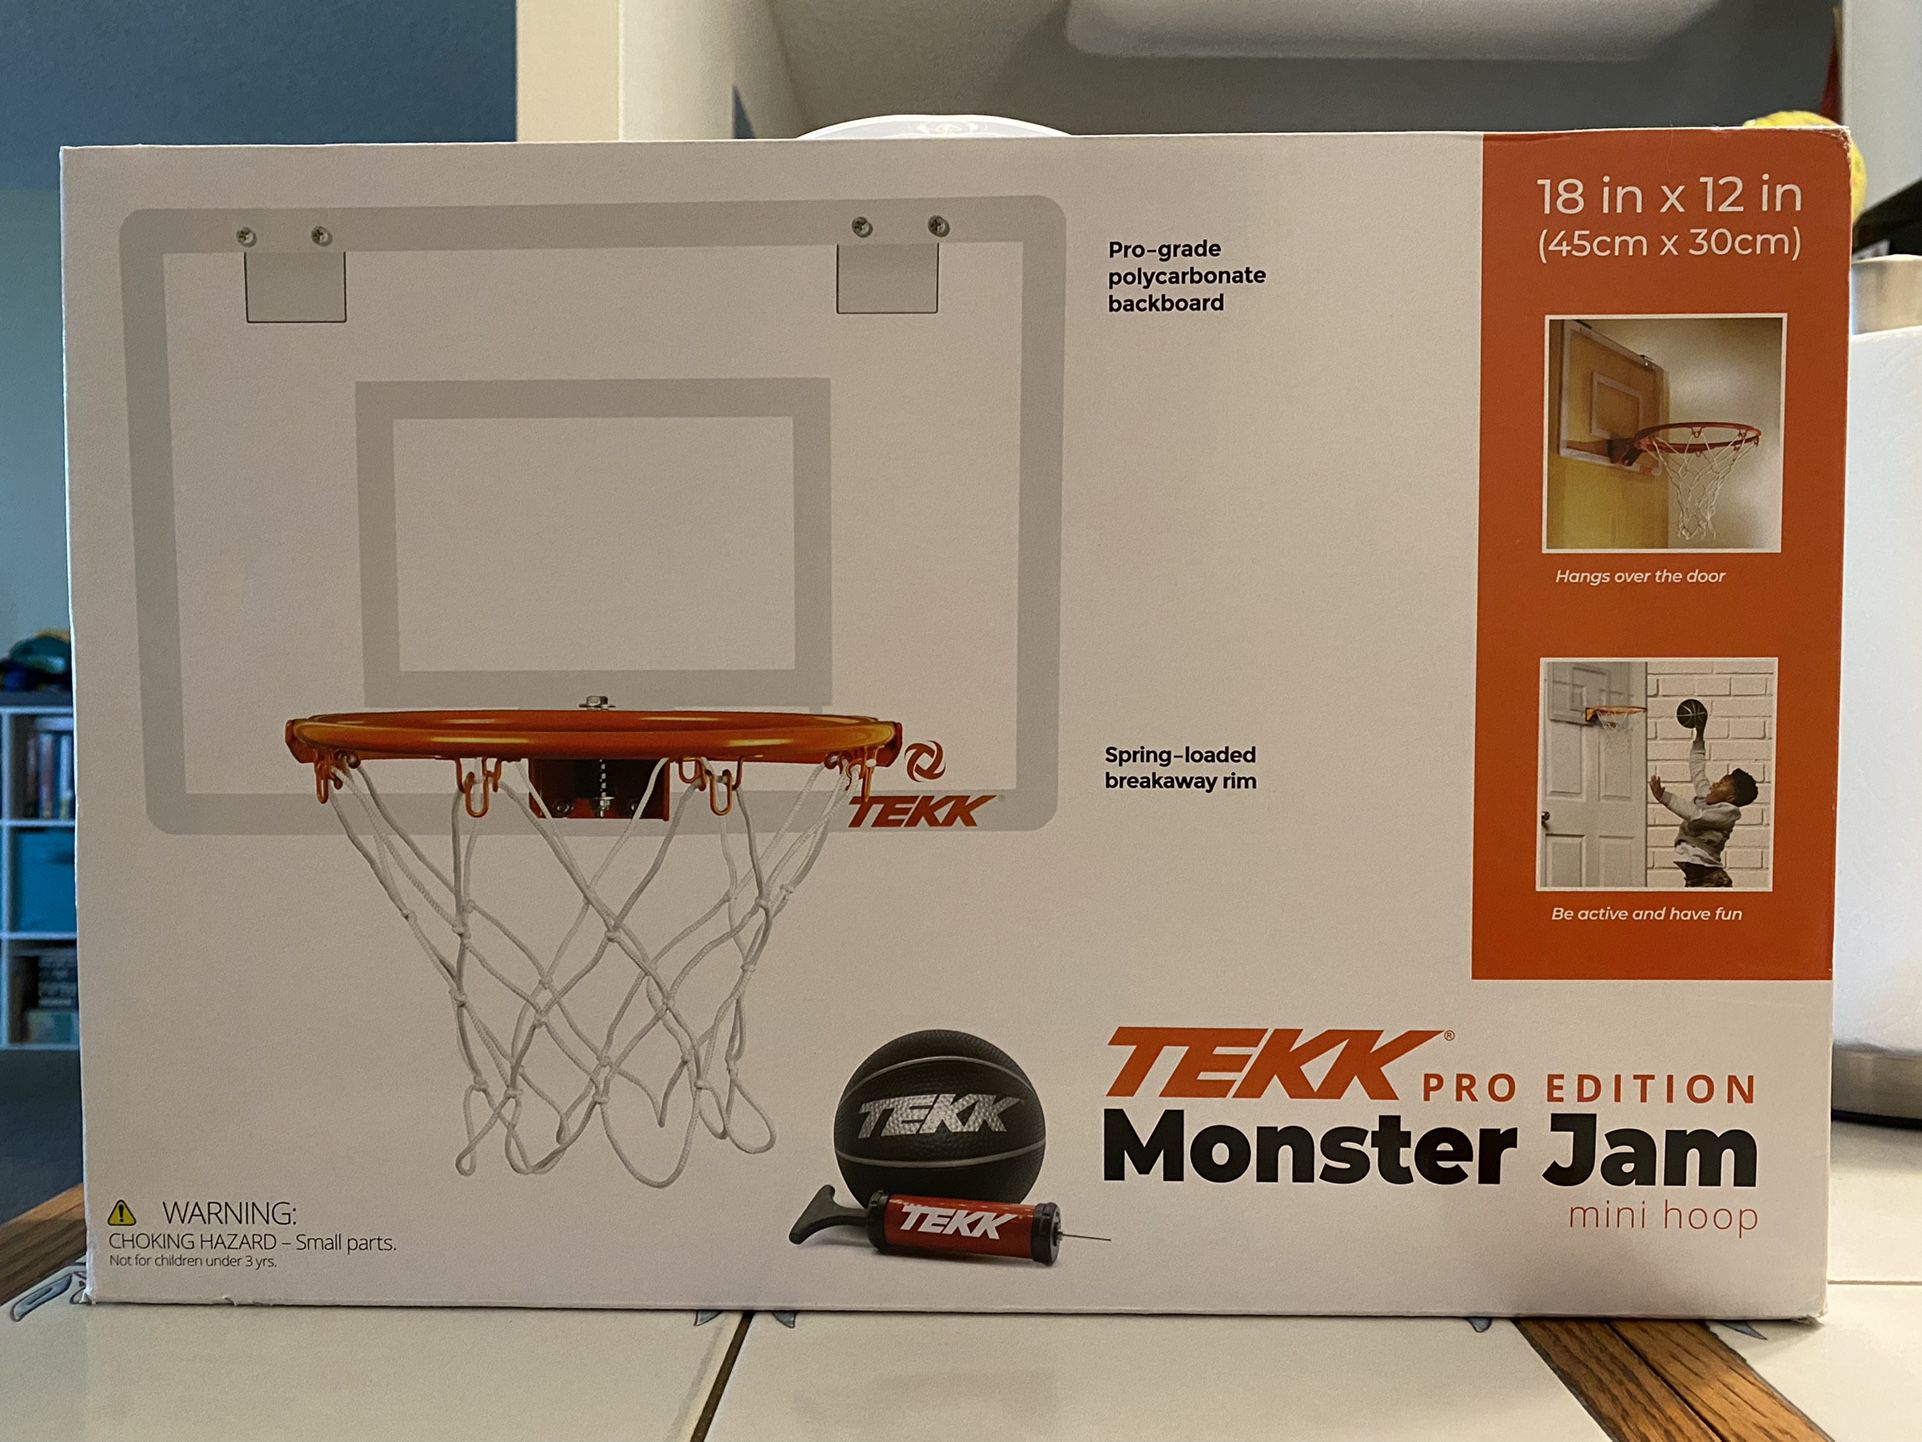 Trekk Pro Edition Monster Jam Mini Hoop